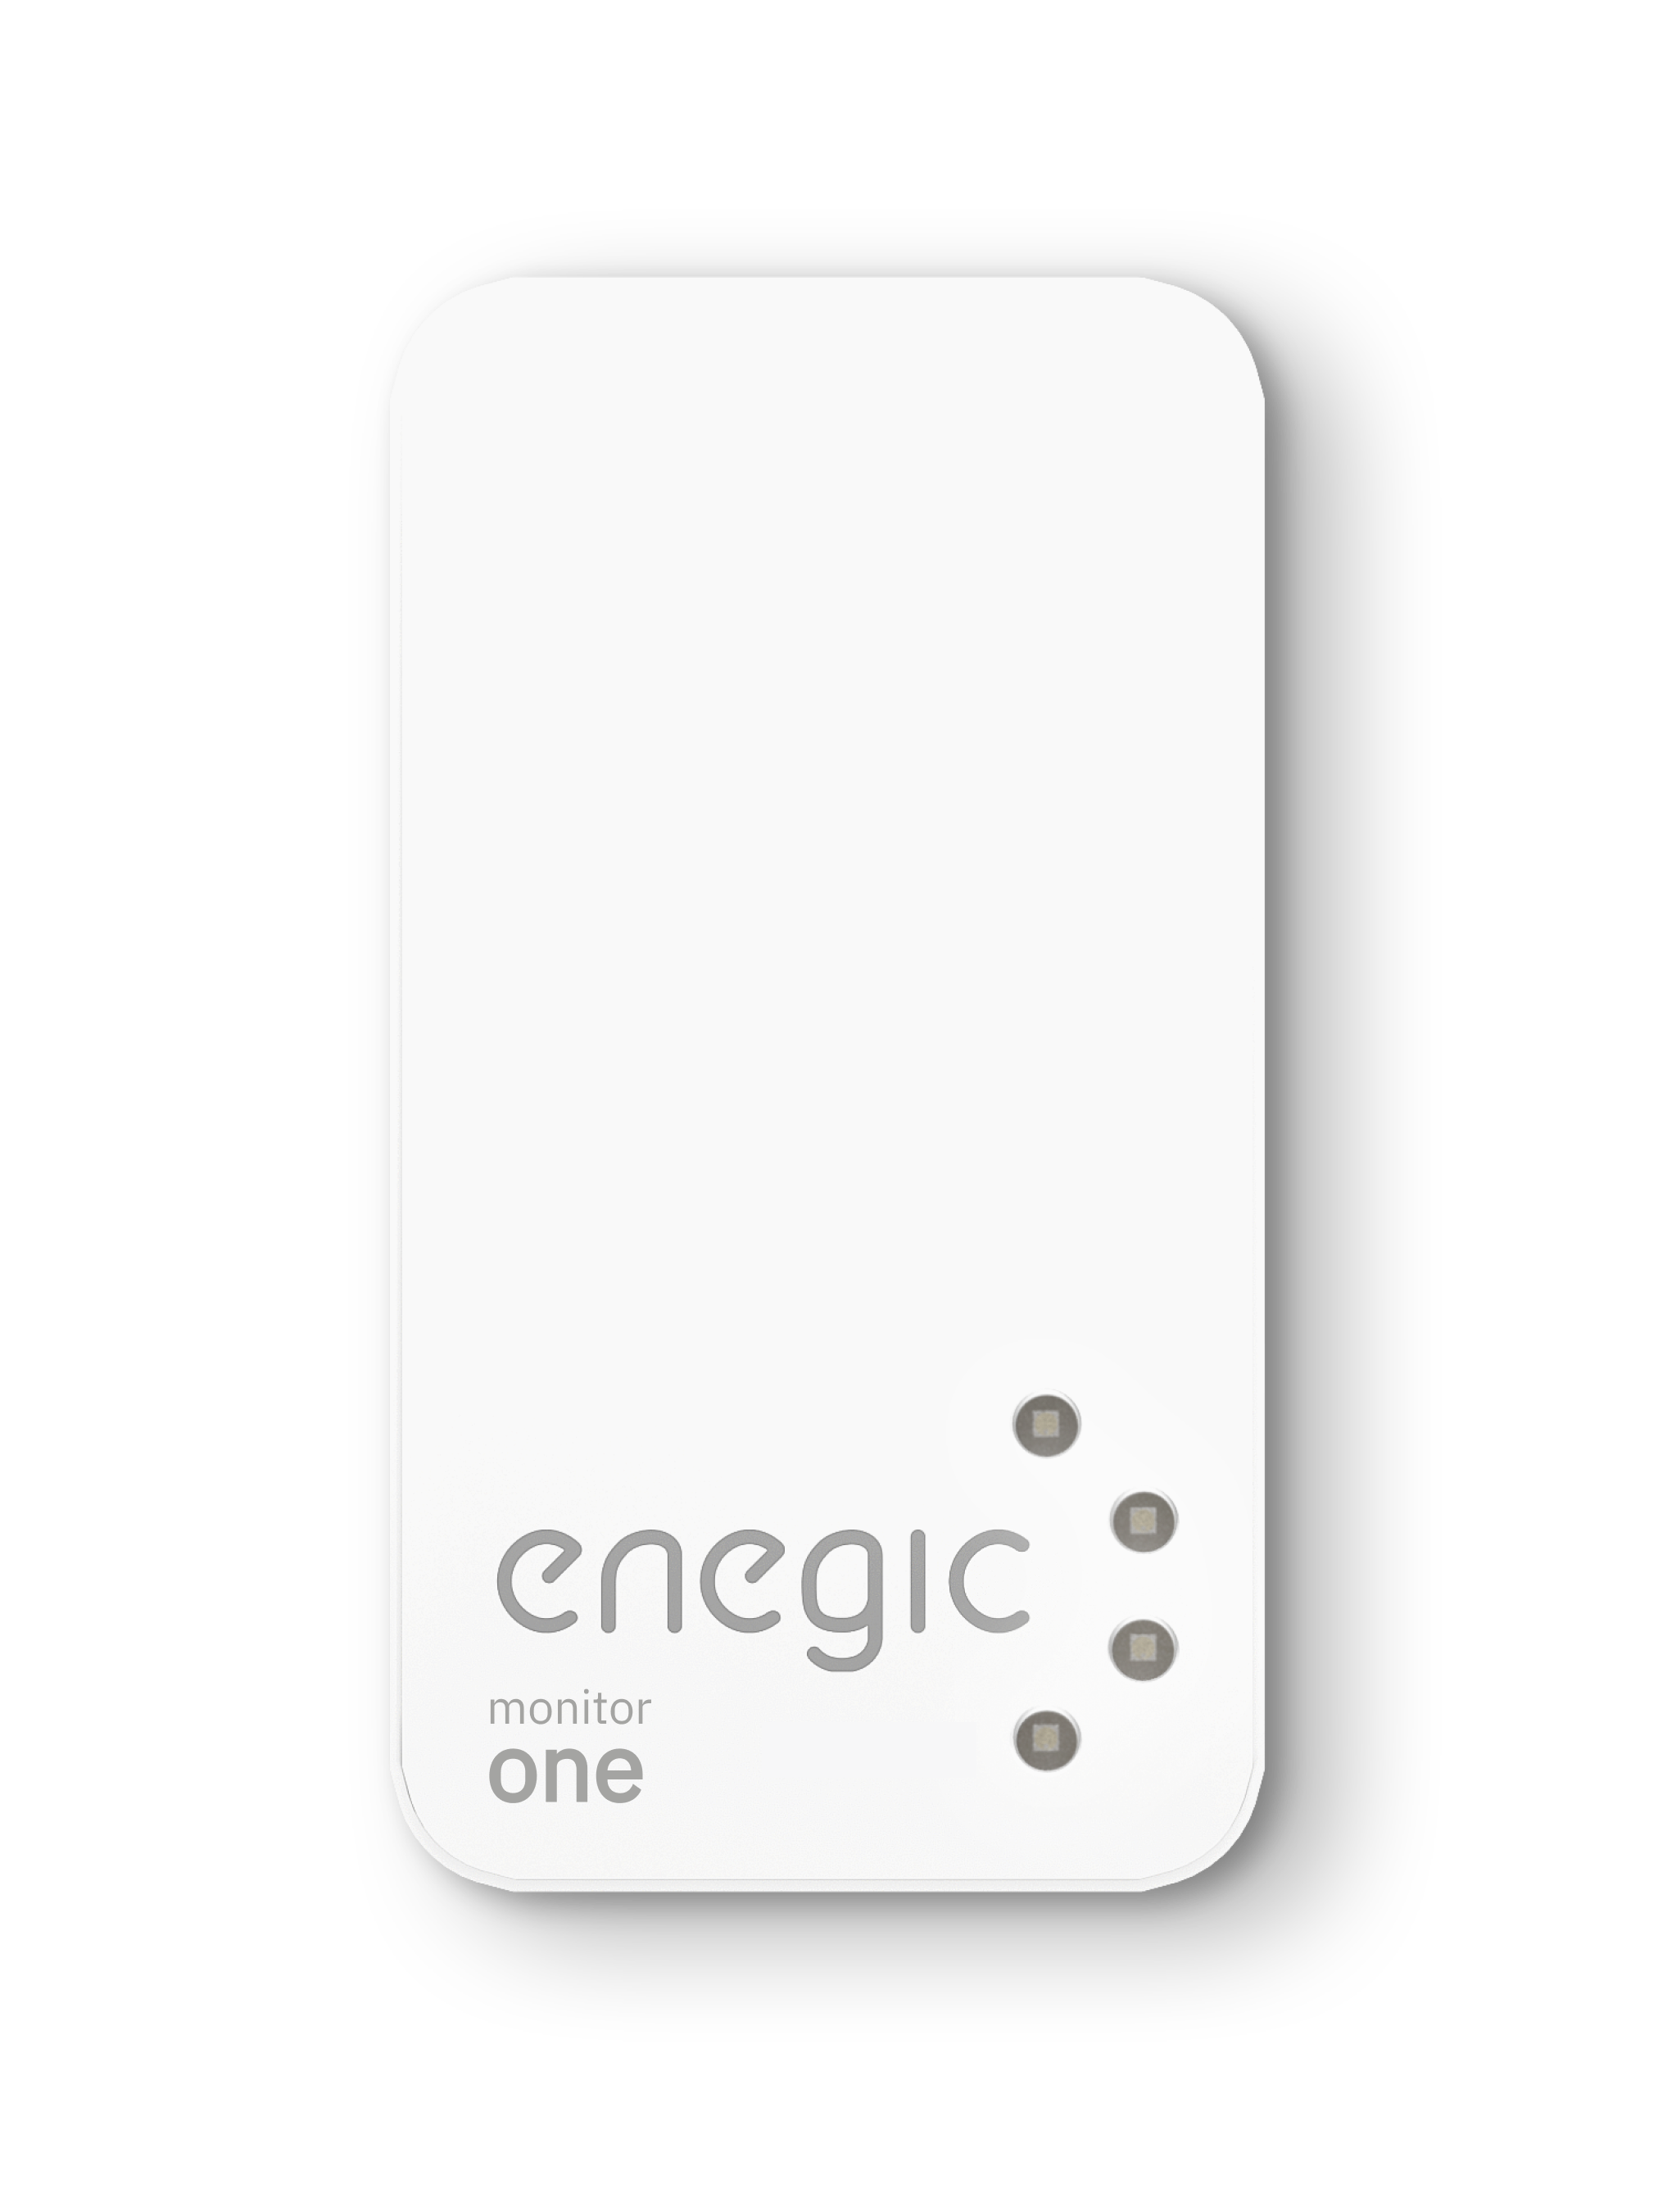 Enegic monitor one